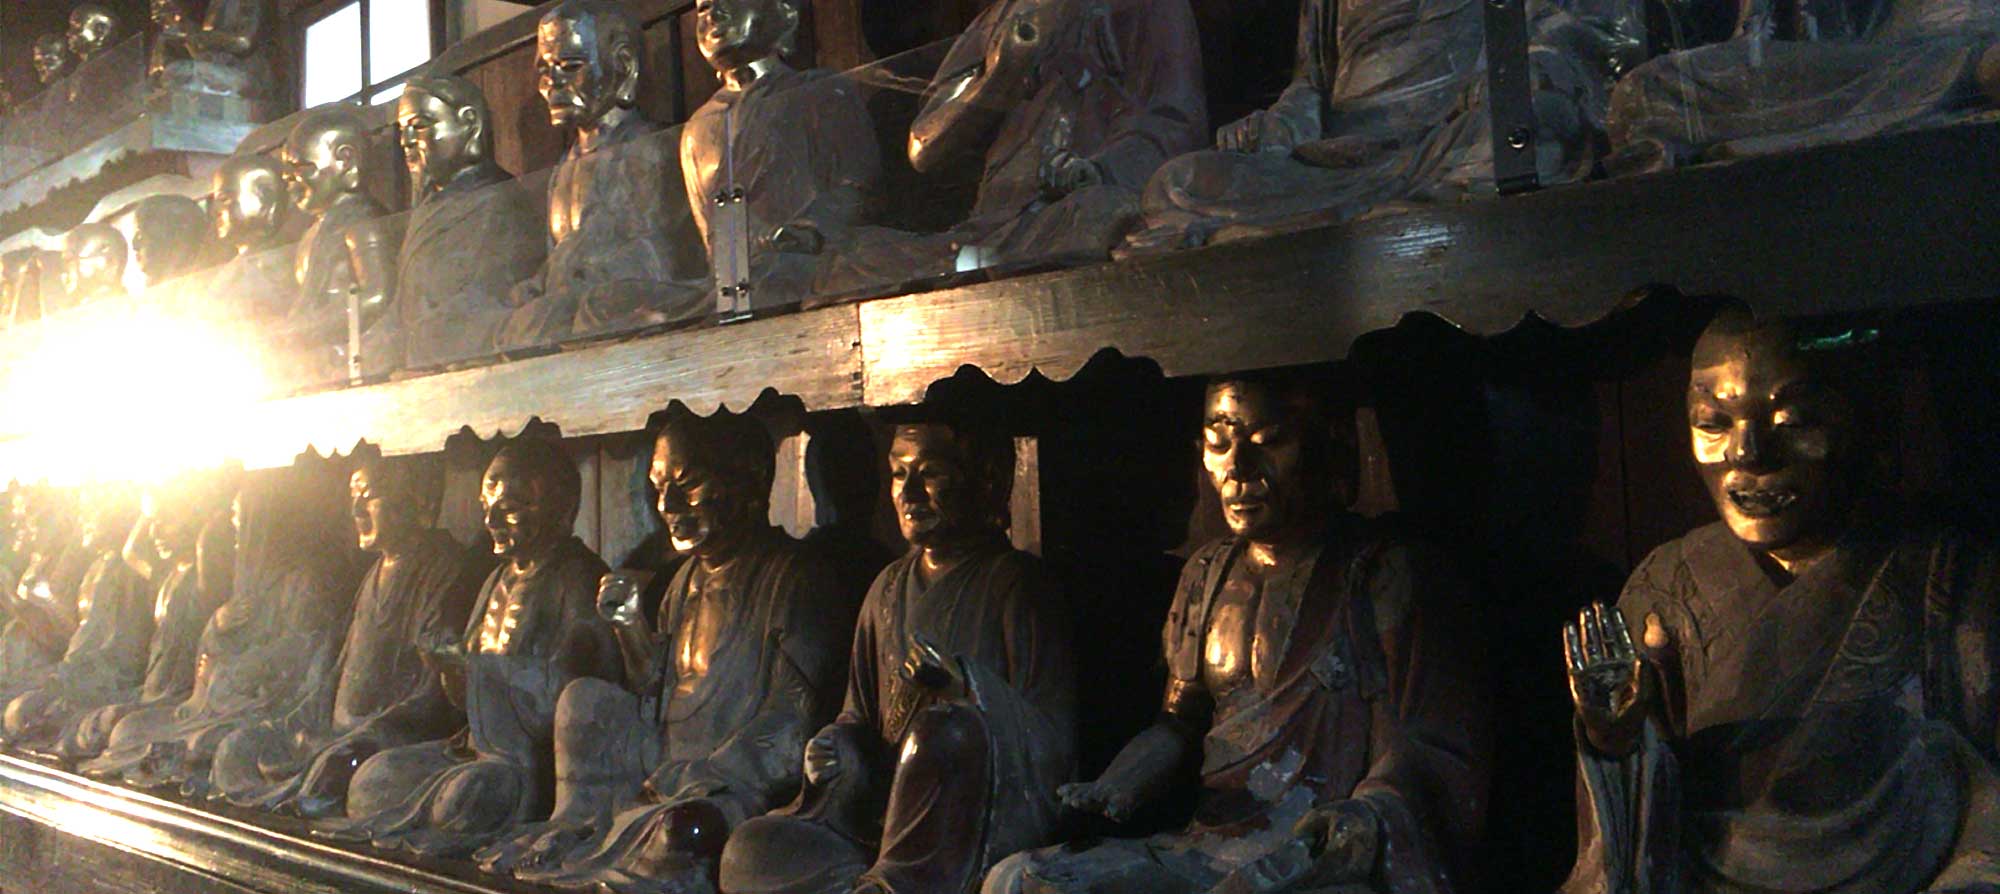 Буддизм и синто. Позолоченные фигуры пятисот архатов, Мориока